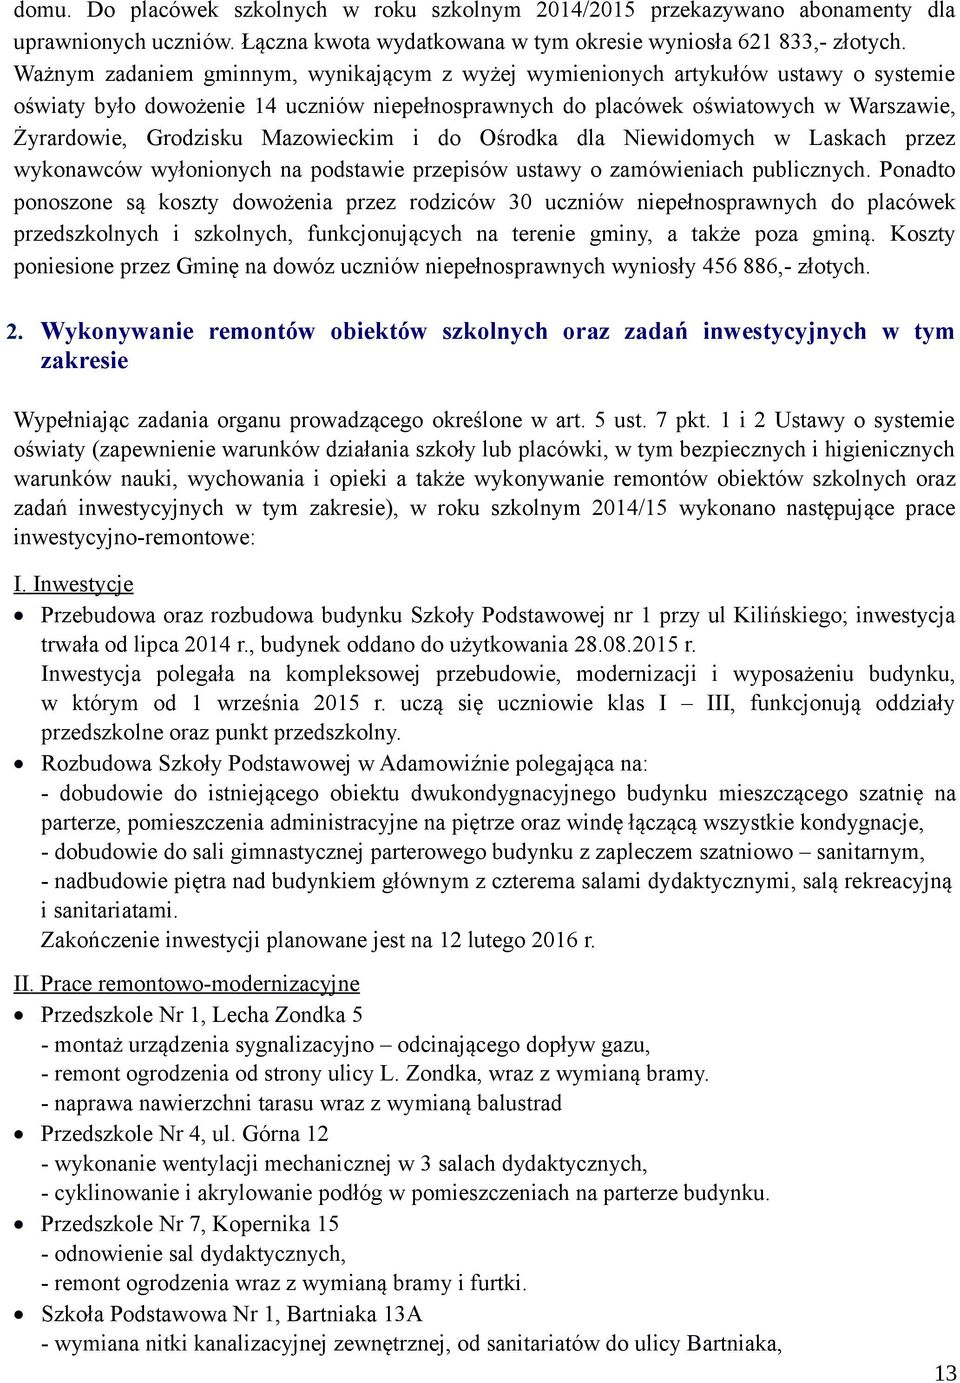 Mazowieckim i do Ośrodka dla Niewidomych w Laskach przez wykonawców wyłonionych na podstawie przepisów ustawy o zamówieniach publicznych.